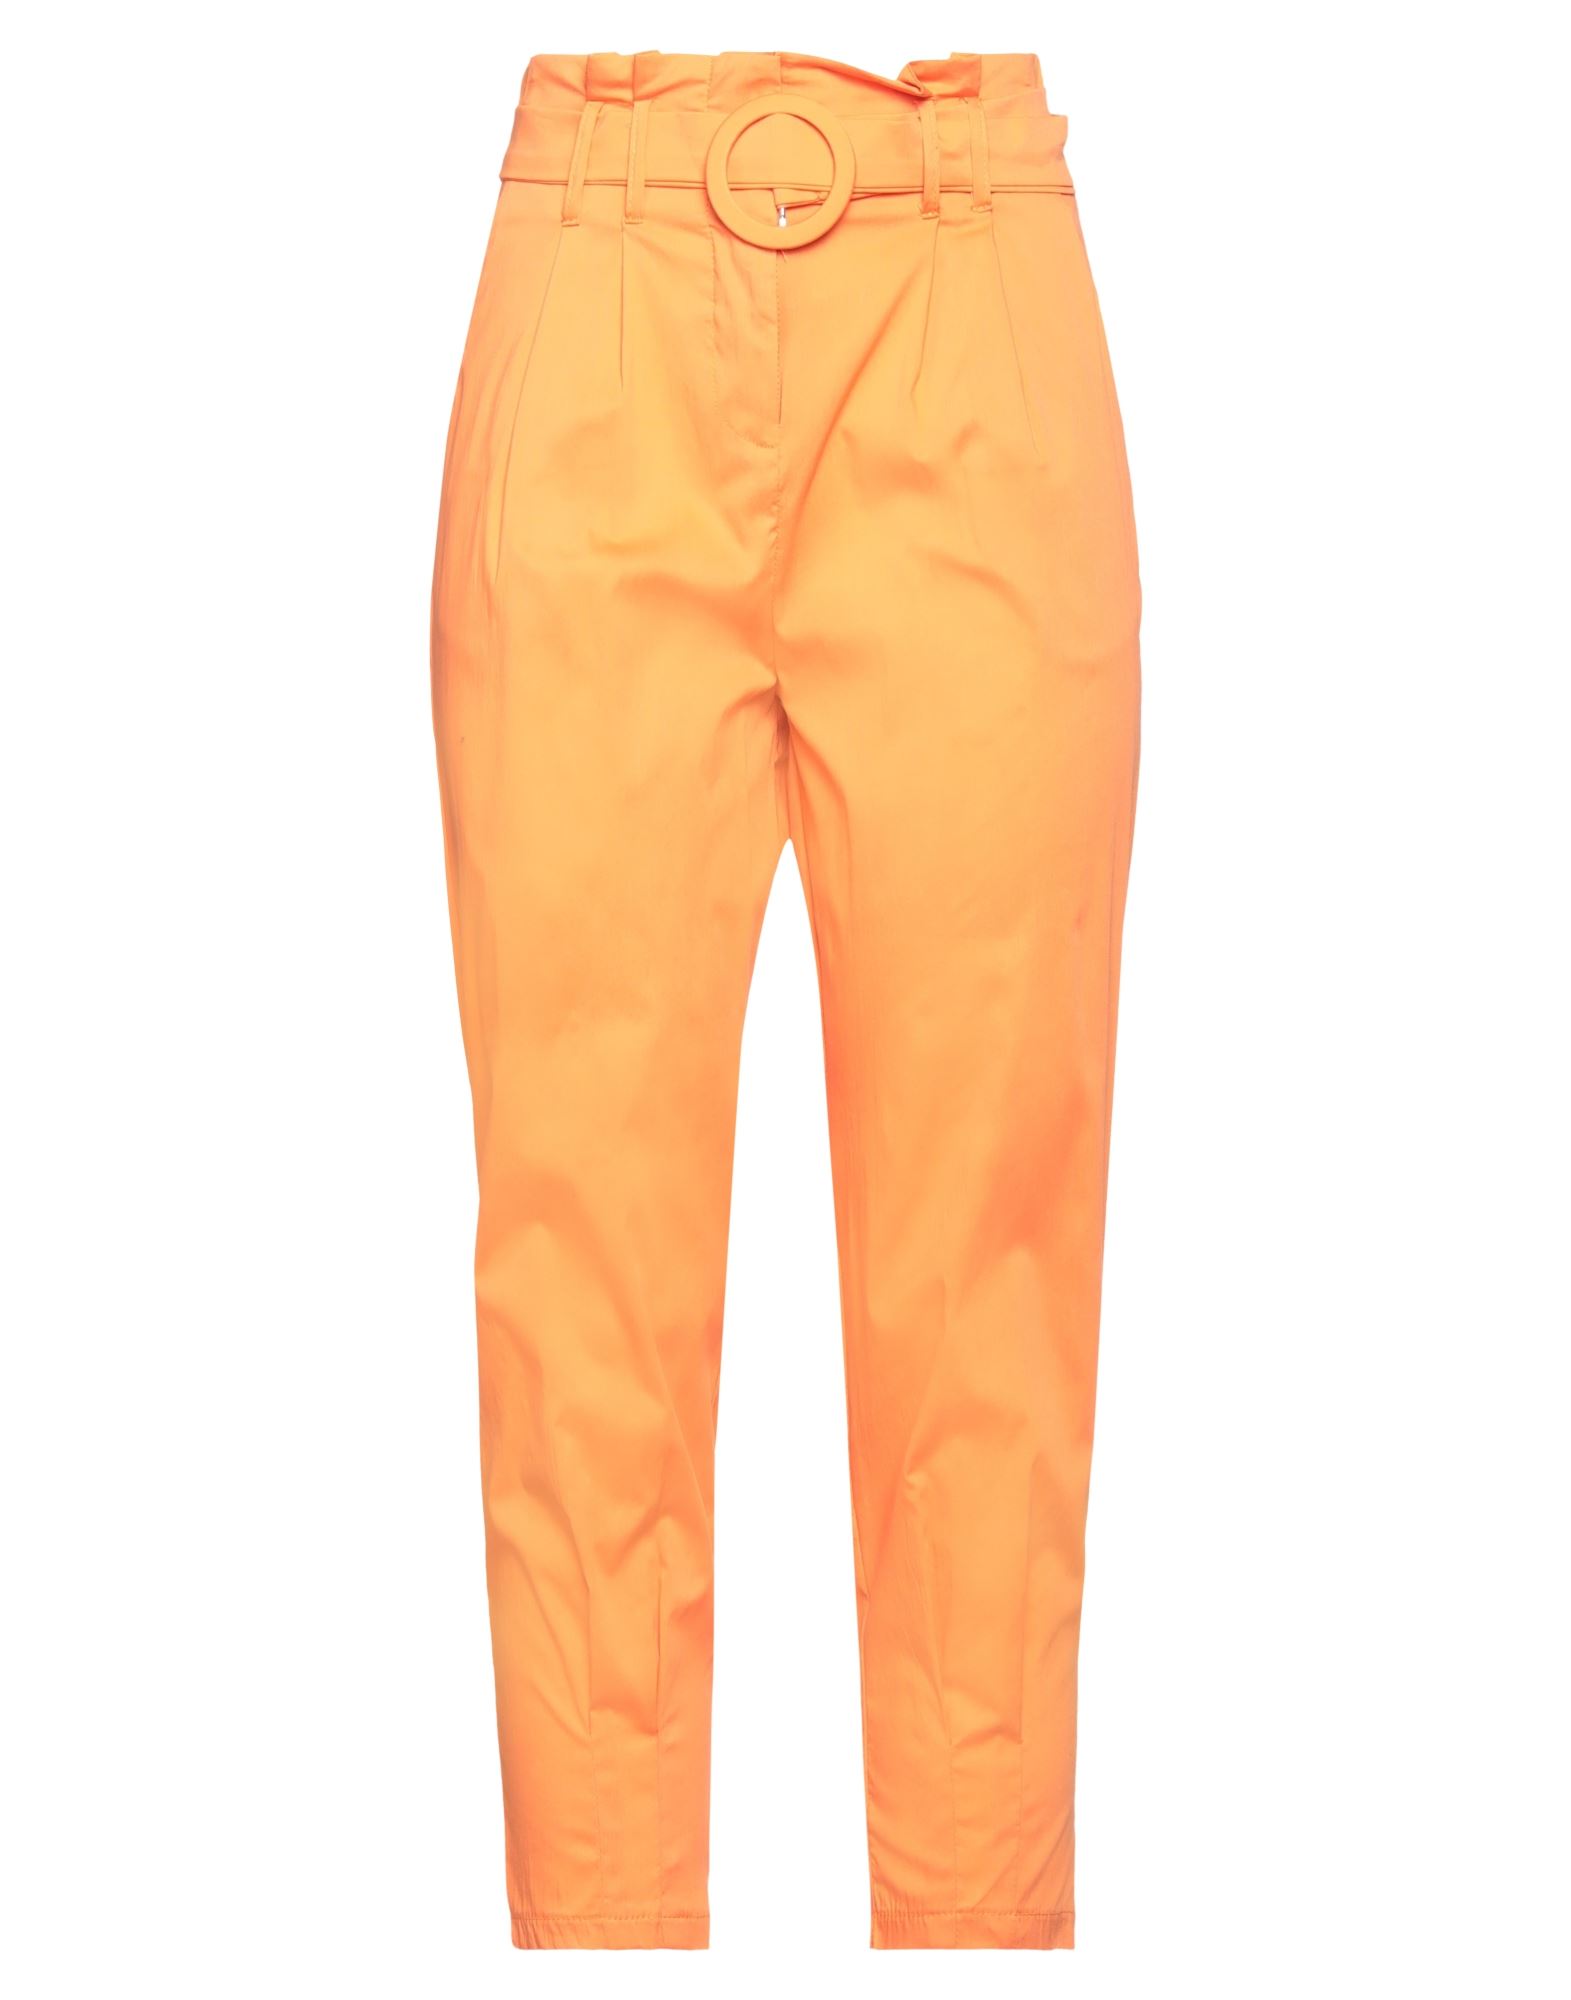 Mironcè Woman Pants Orange Size 6 Cotton, Polyamide, Elastane